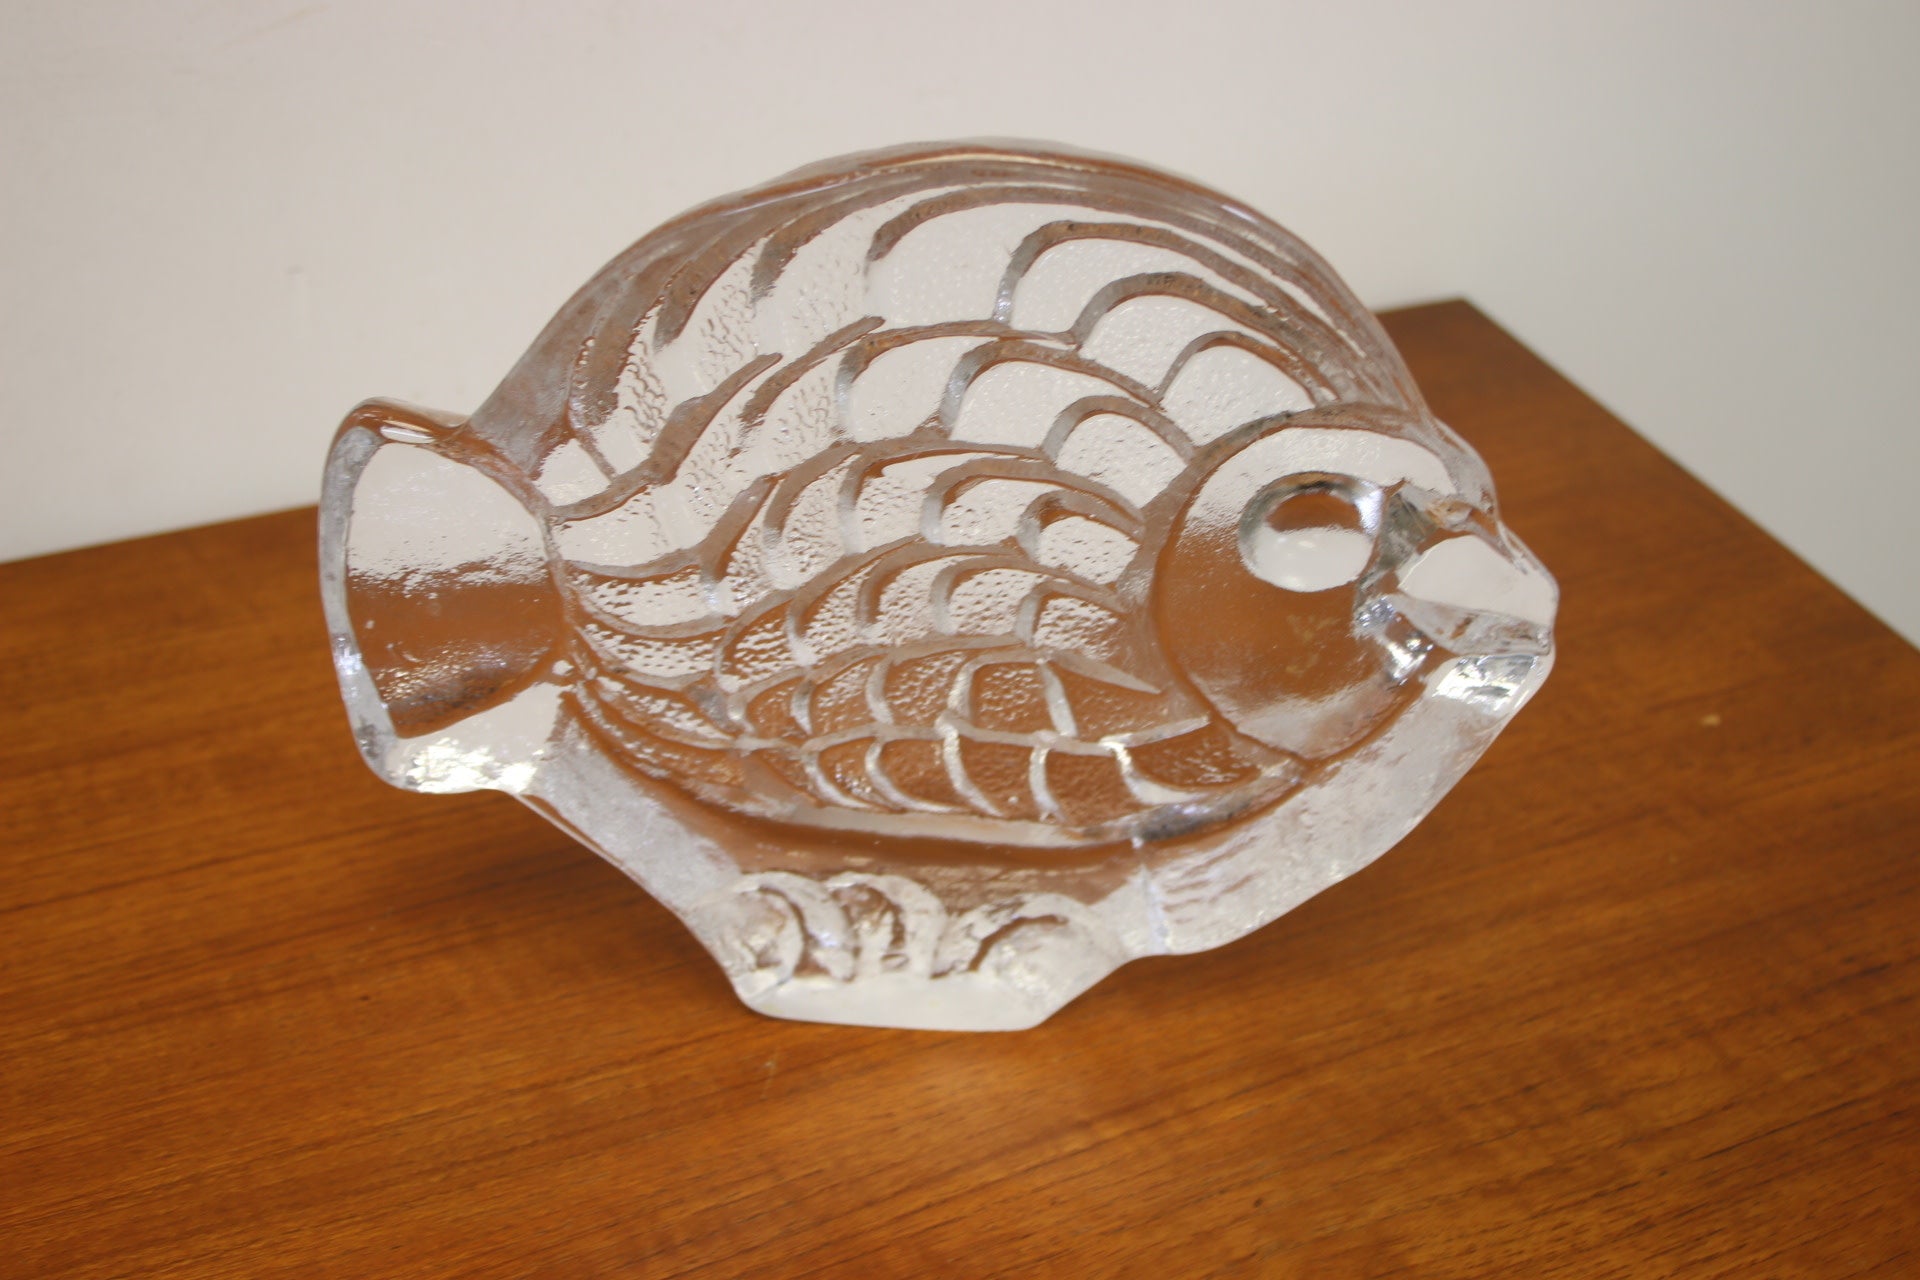 Dreigend haak Supermarkt Fish Made of Thick Pressed Glass - Timeless Art – Timeless-Art